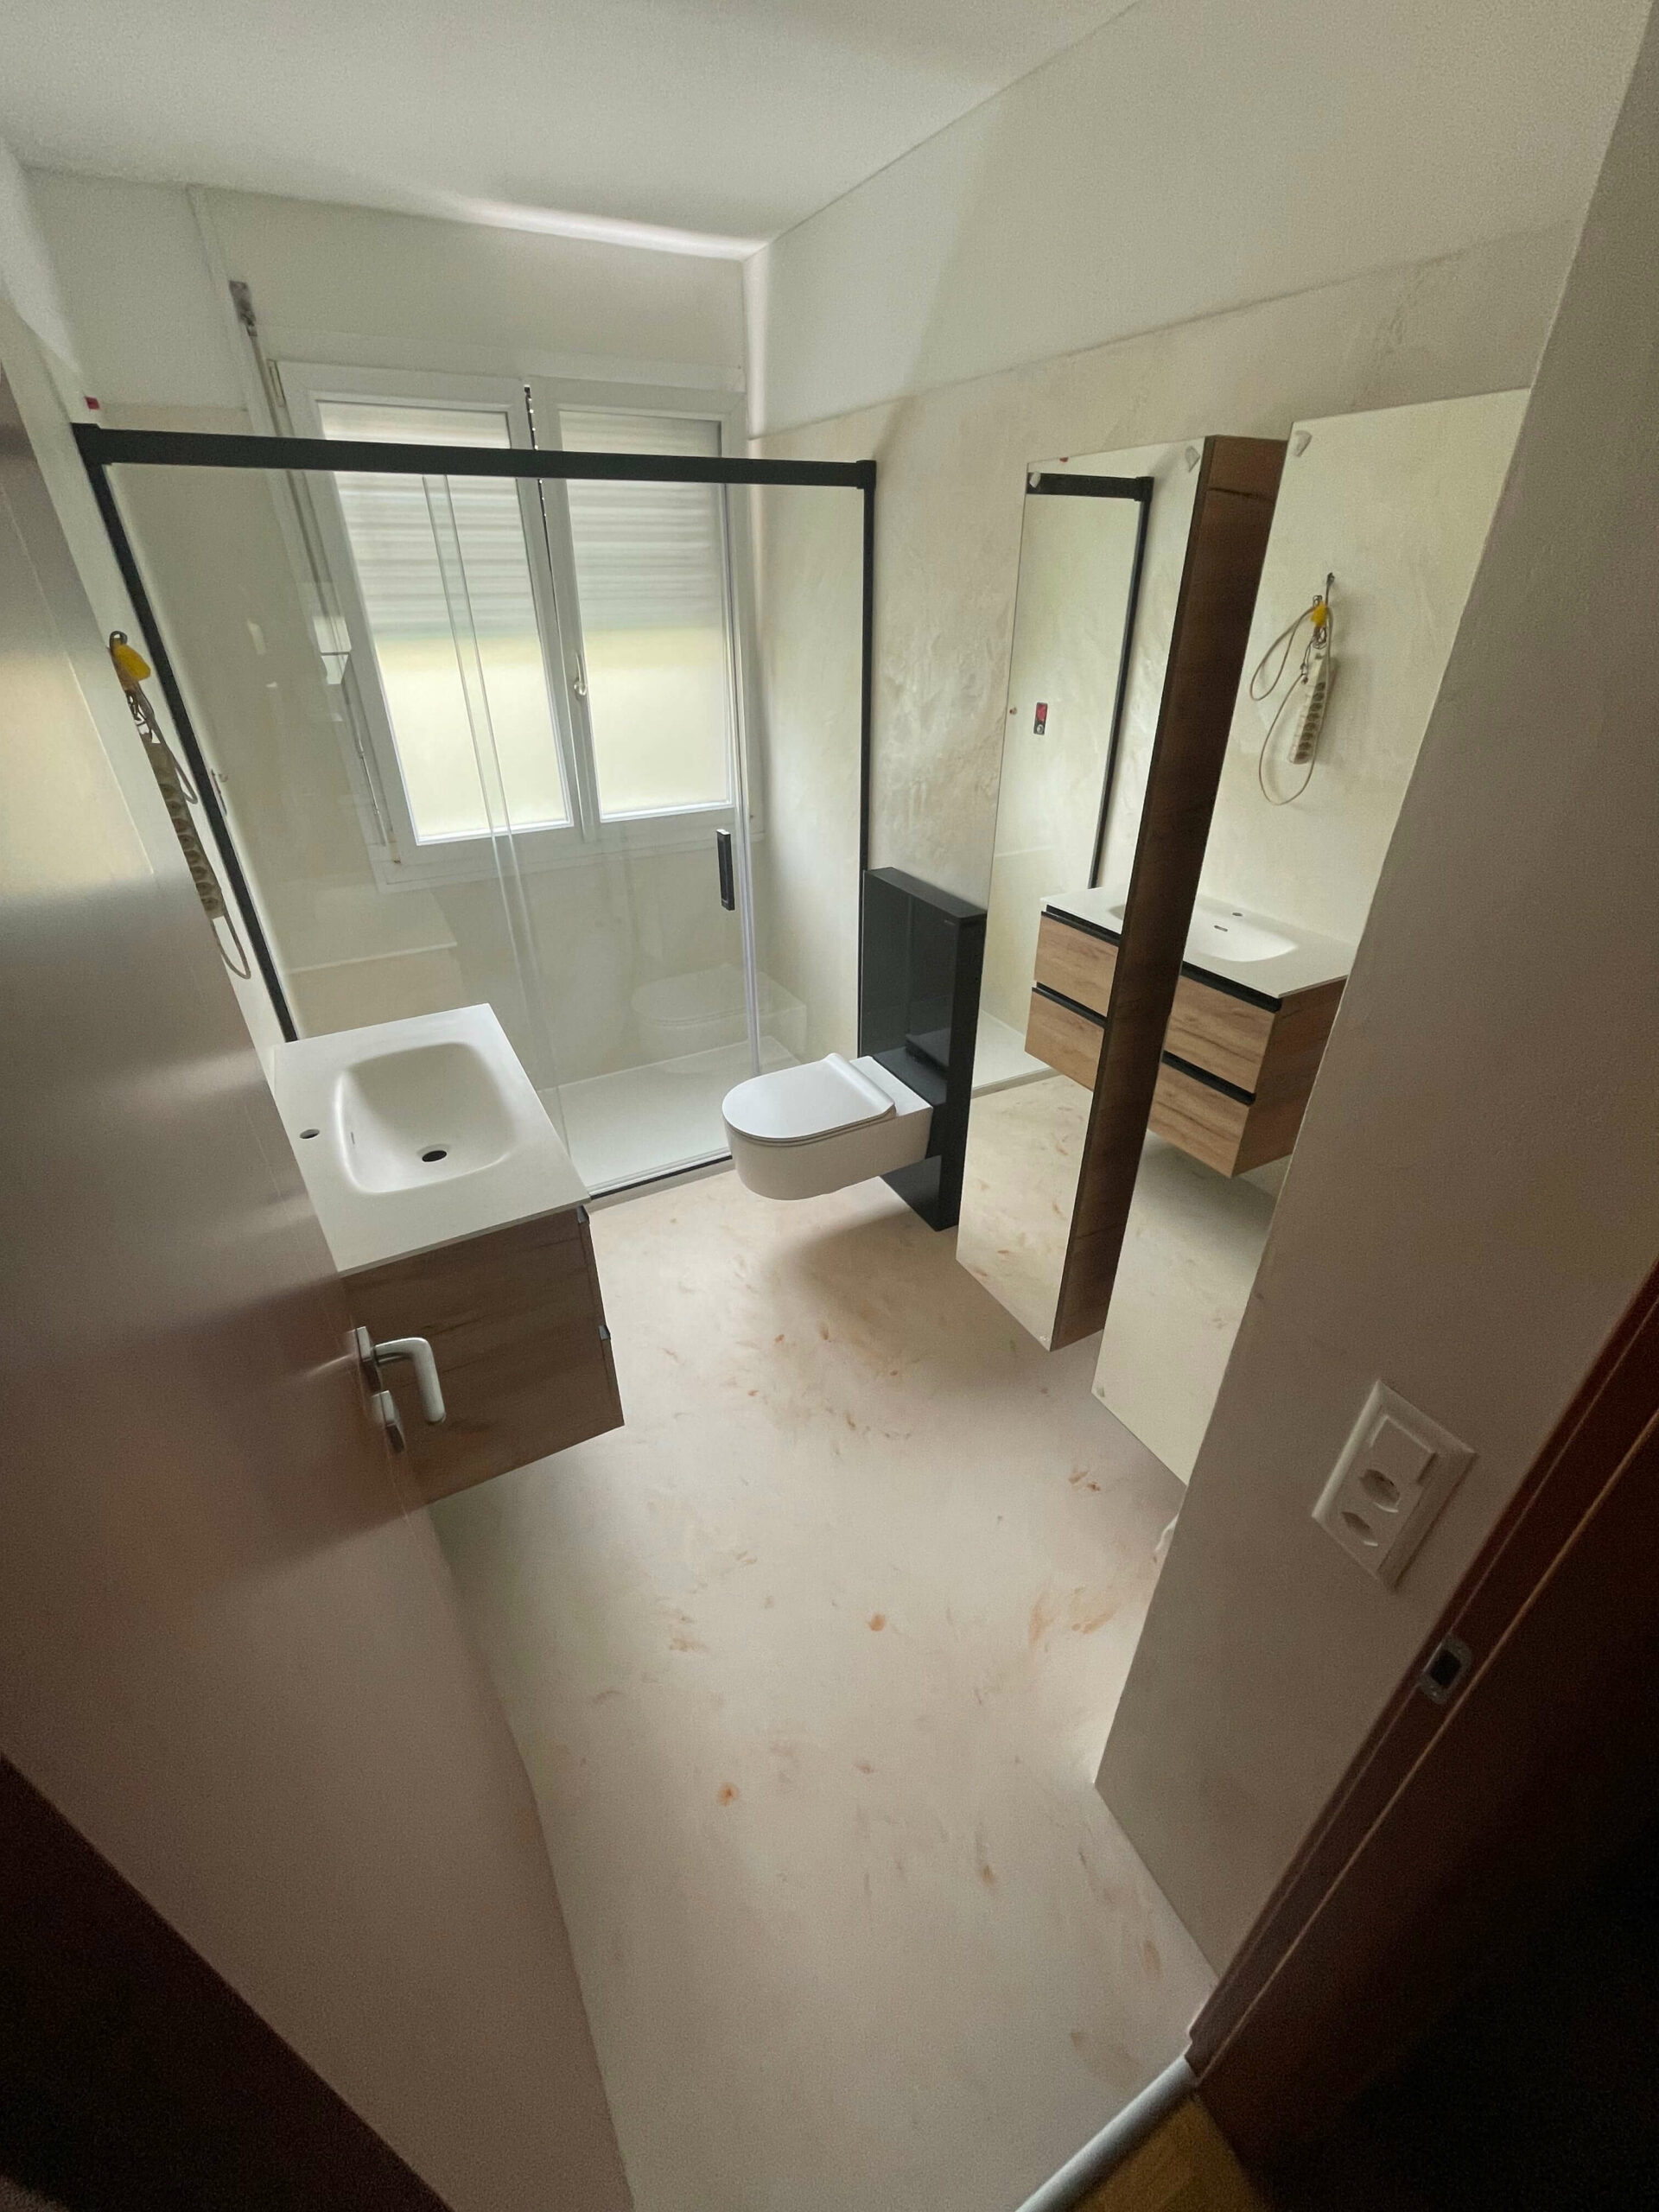 ristrutturazione bagni moderni con wc sospeso, rifiniture scure e doccia in vetro